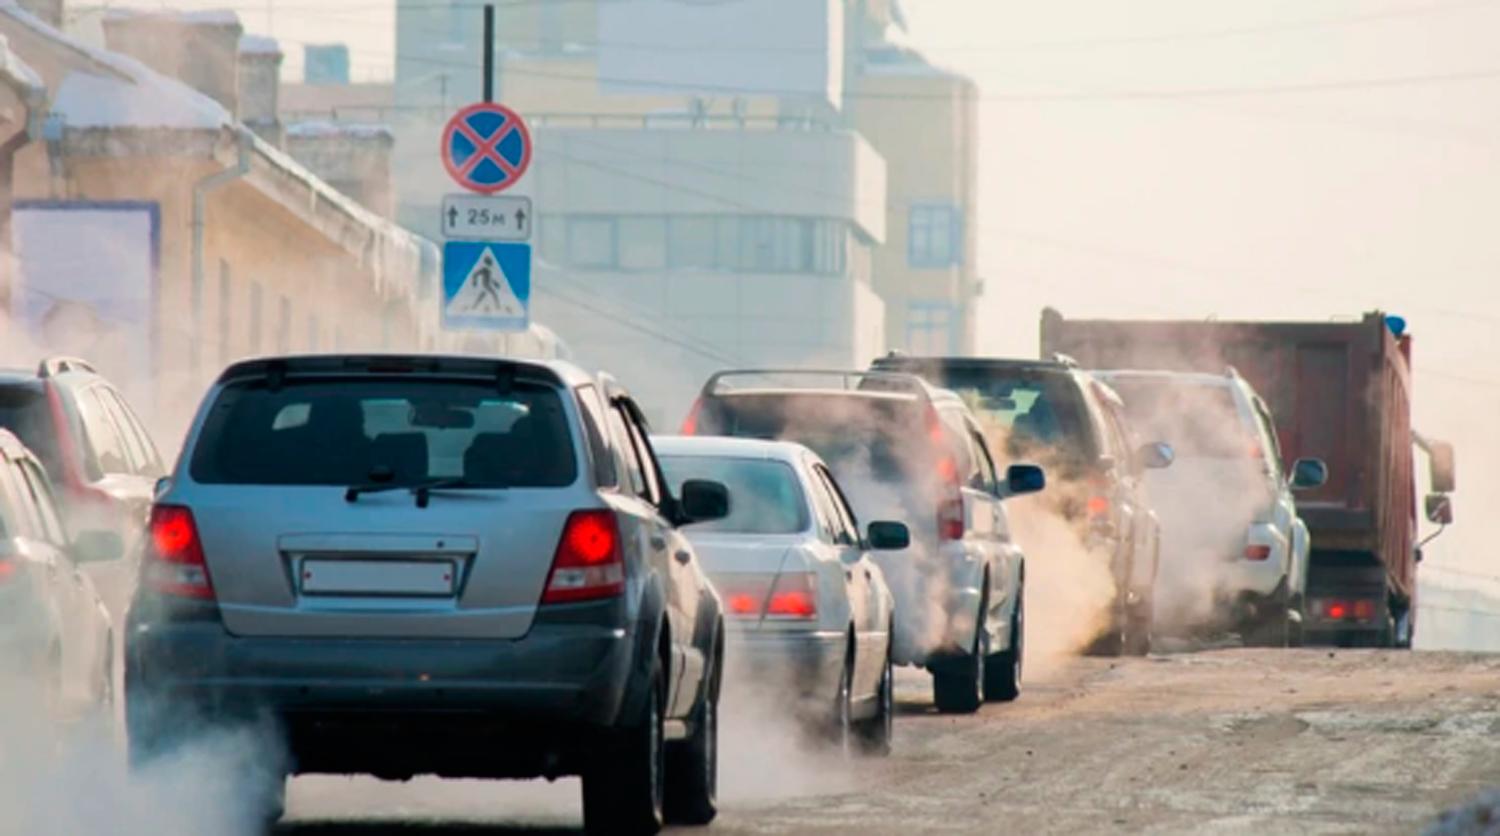 CAMBIO. Productos de limpieza y demás actividades domésticas contaminan más que autos y camiones.